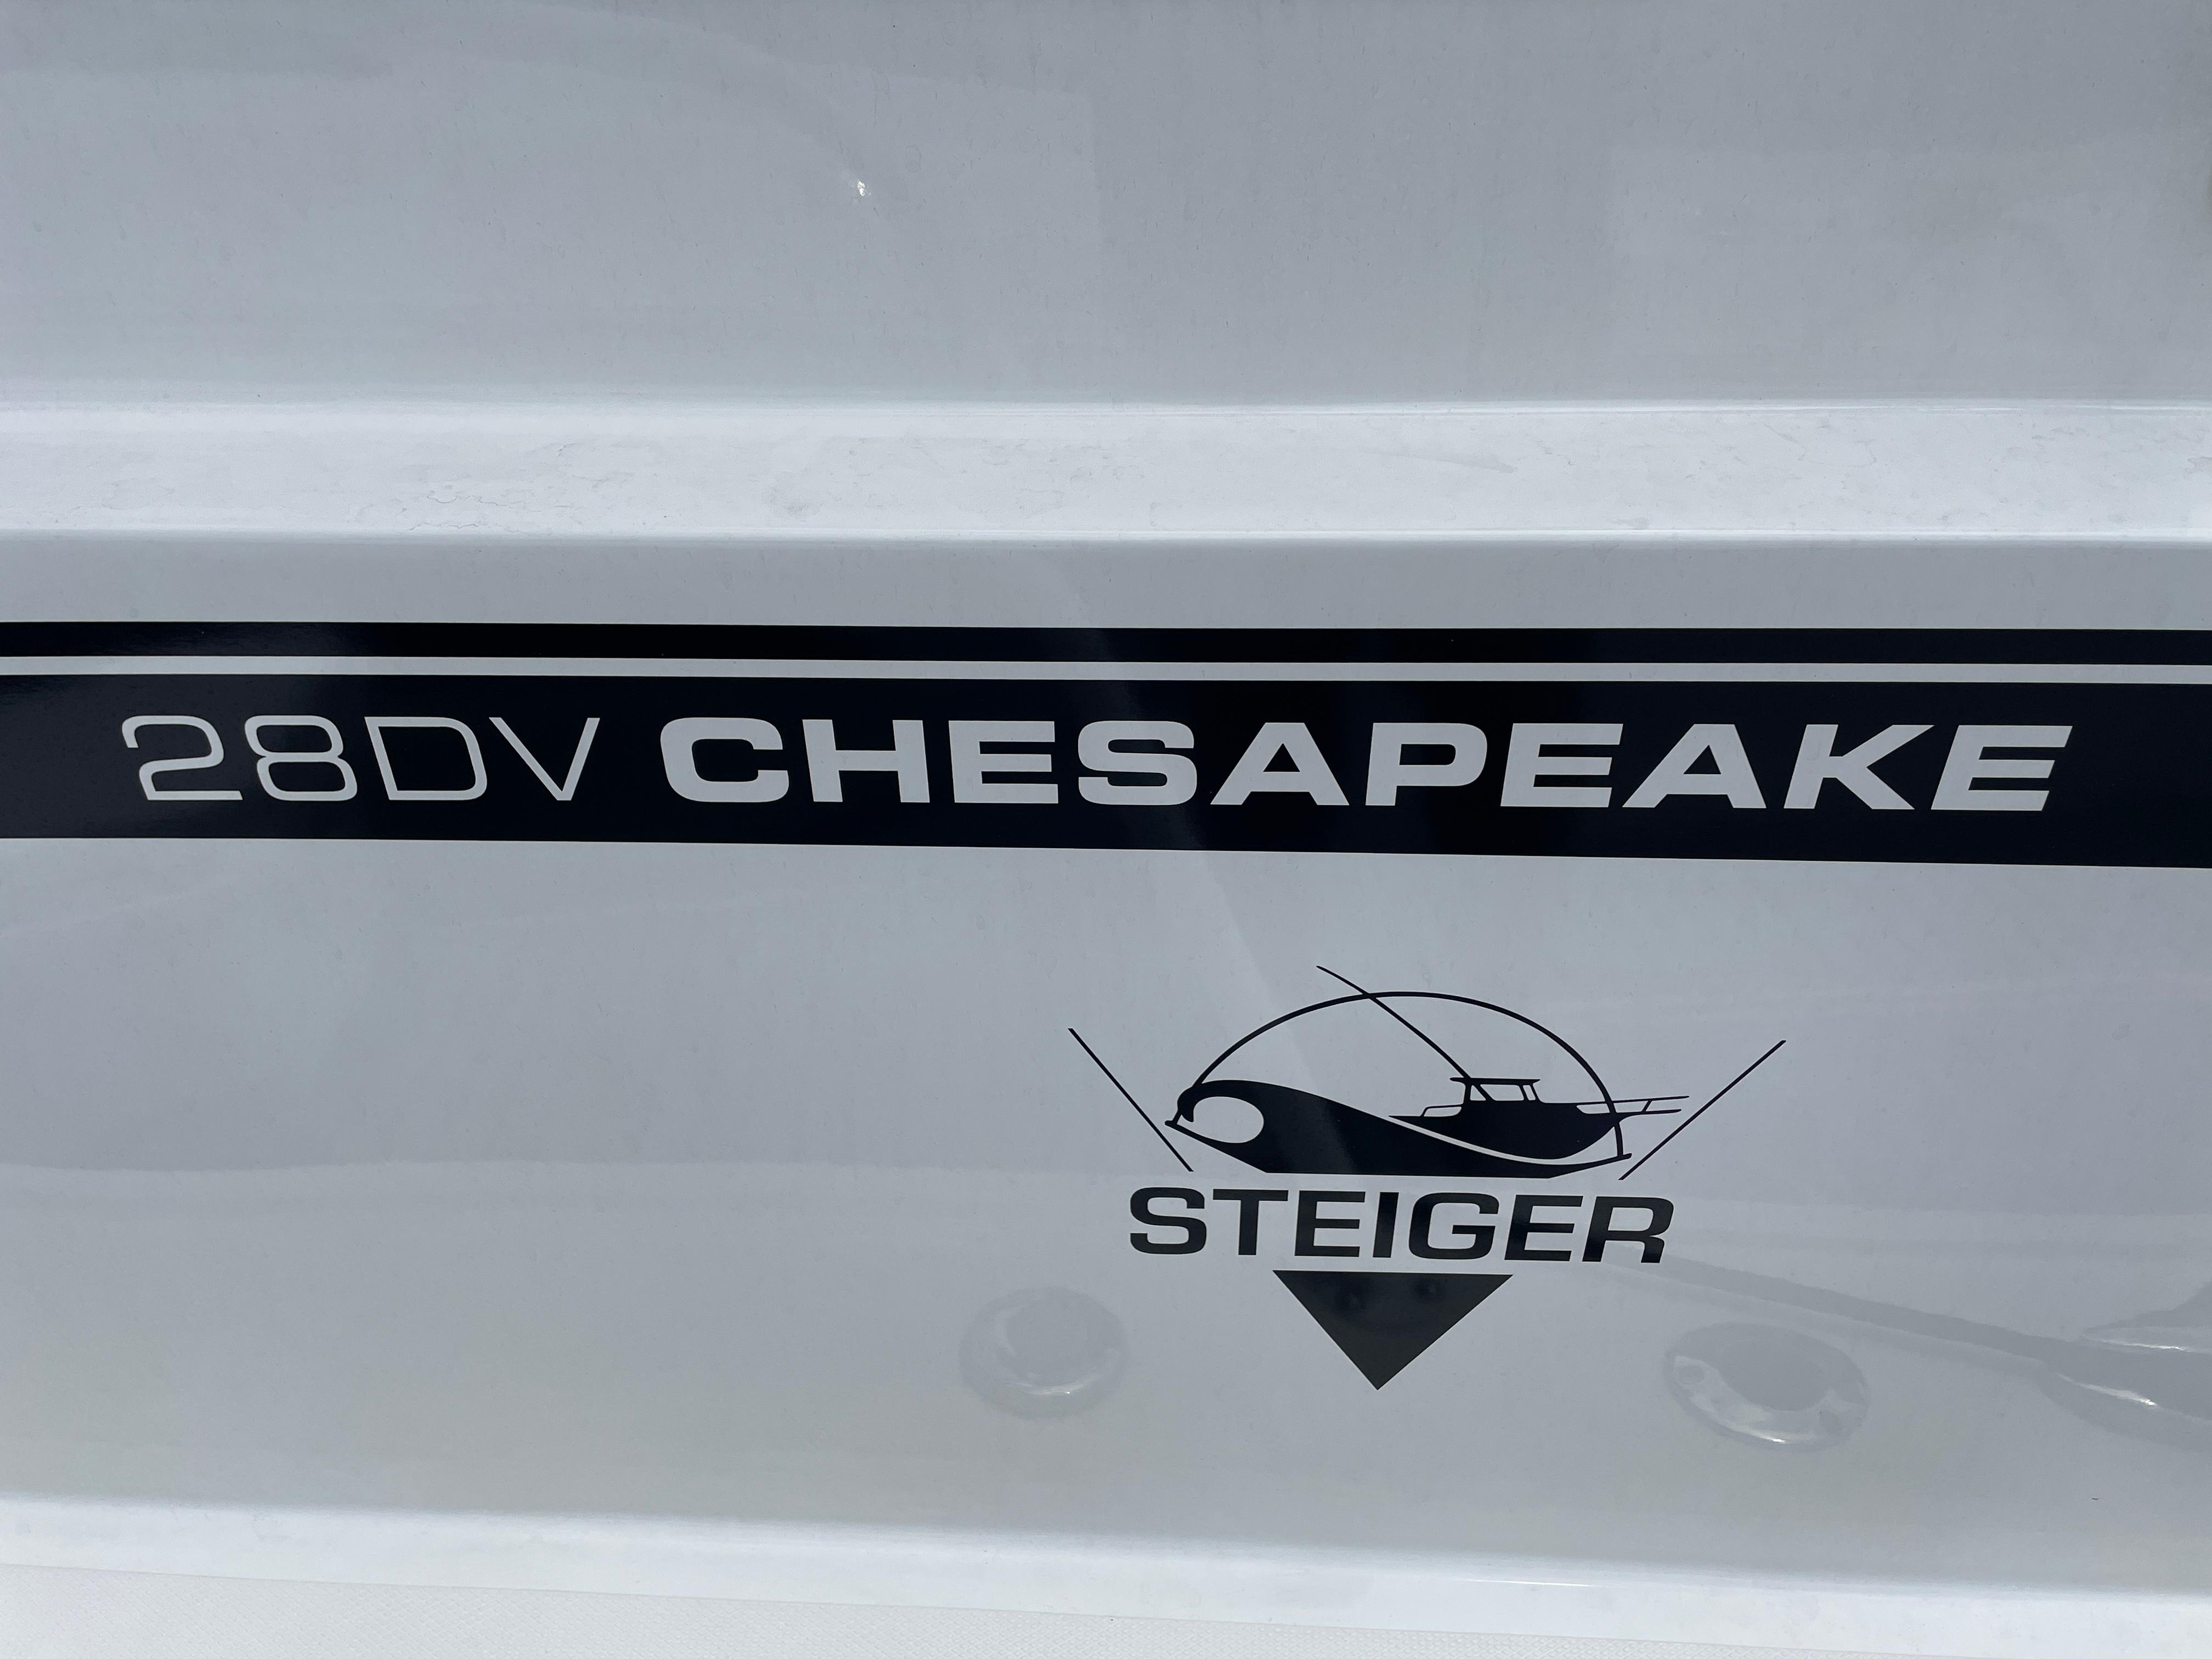 2021 Steiger Craft 28 DV Chesapeake